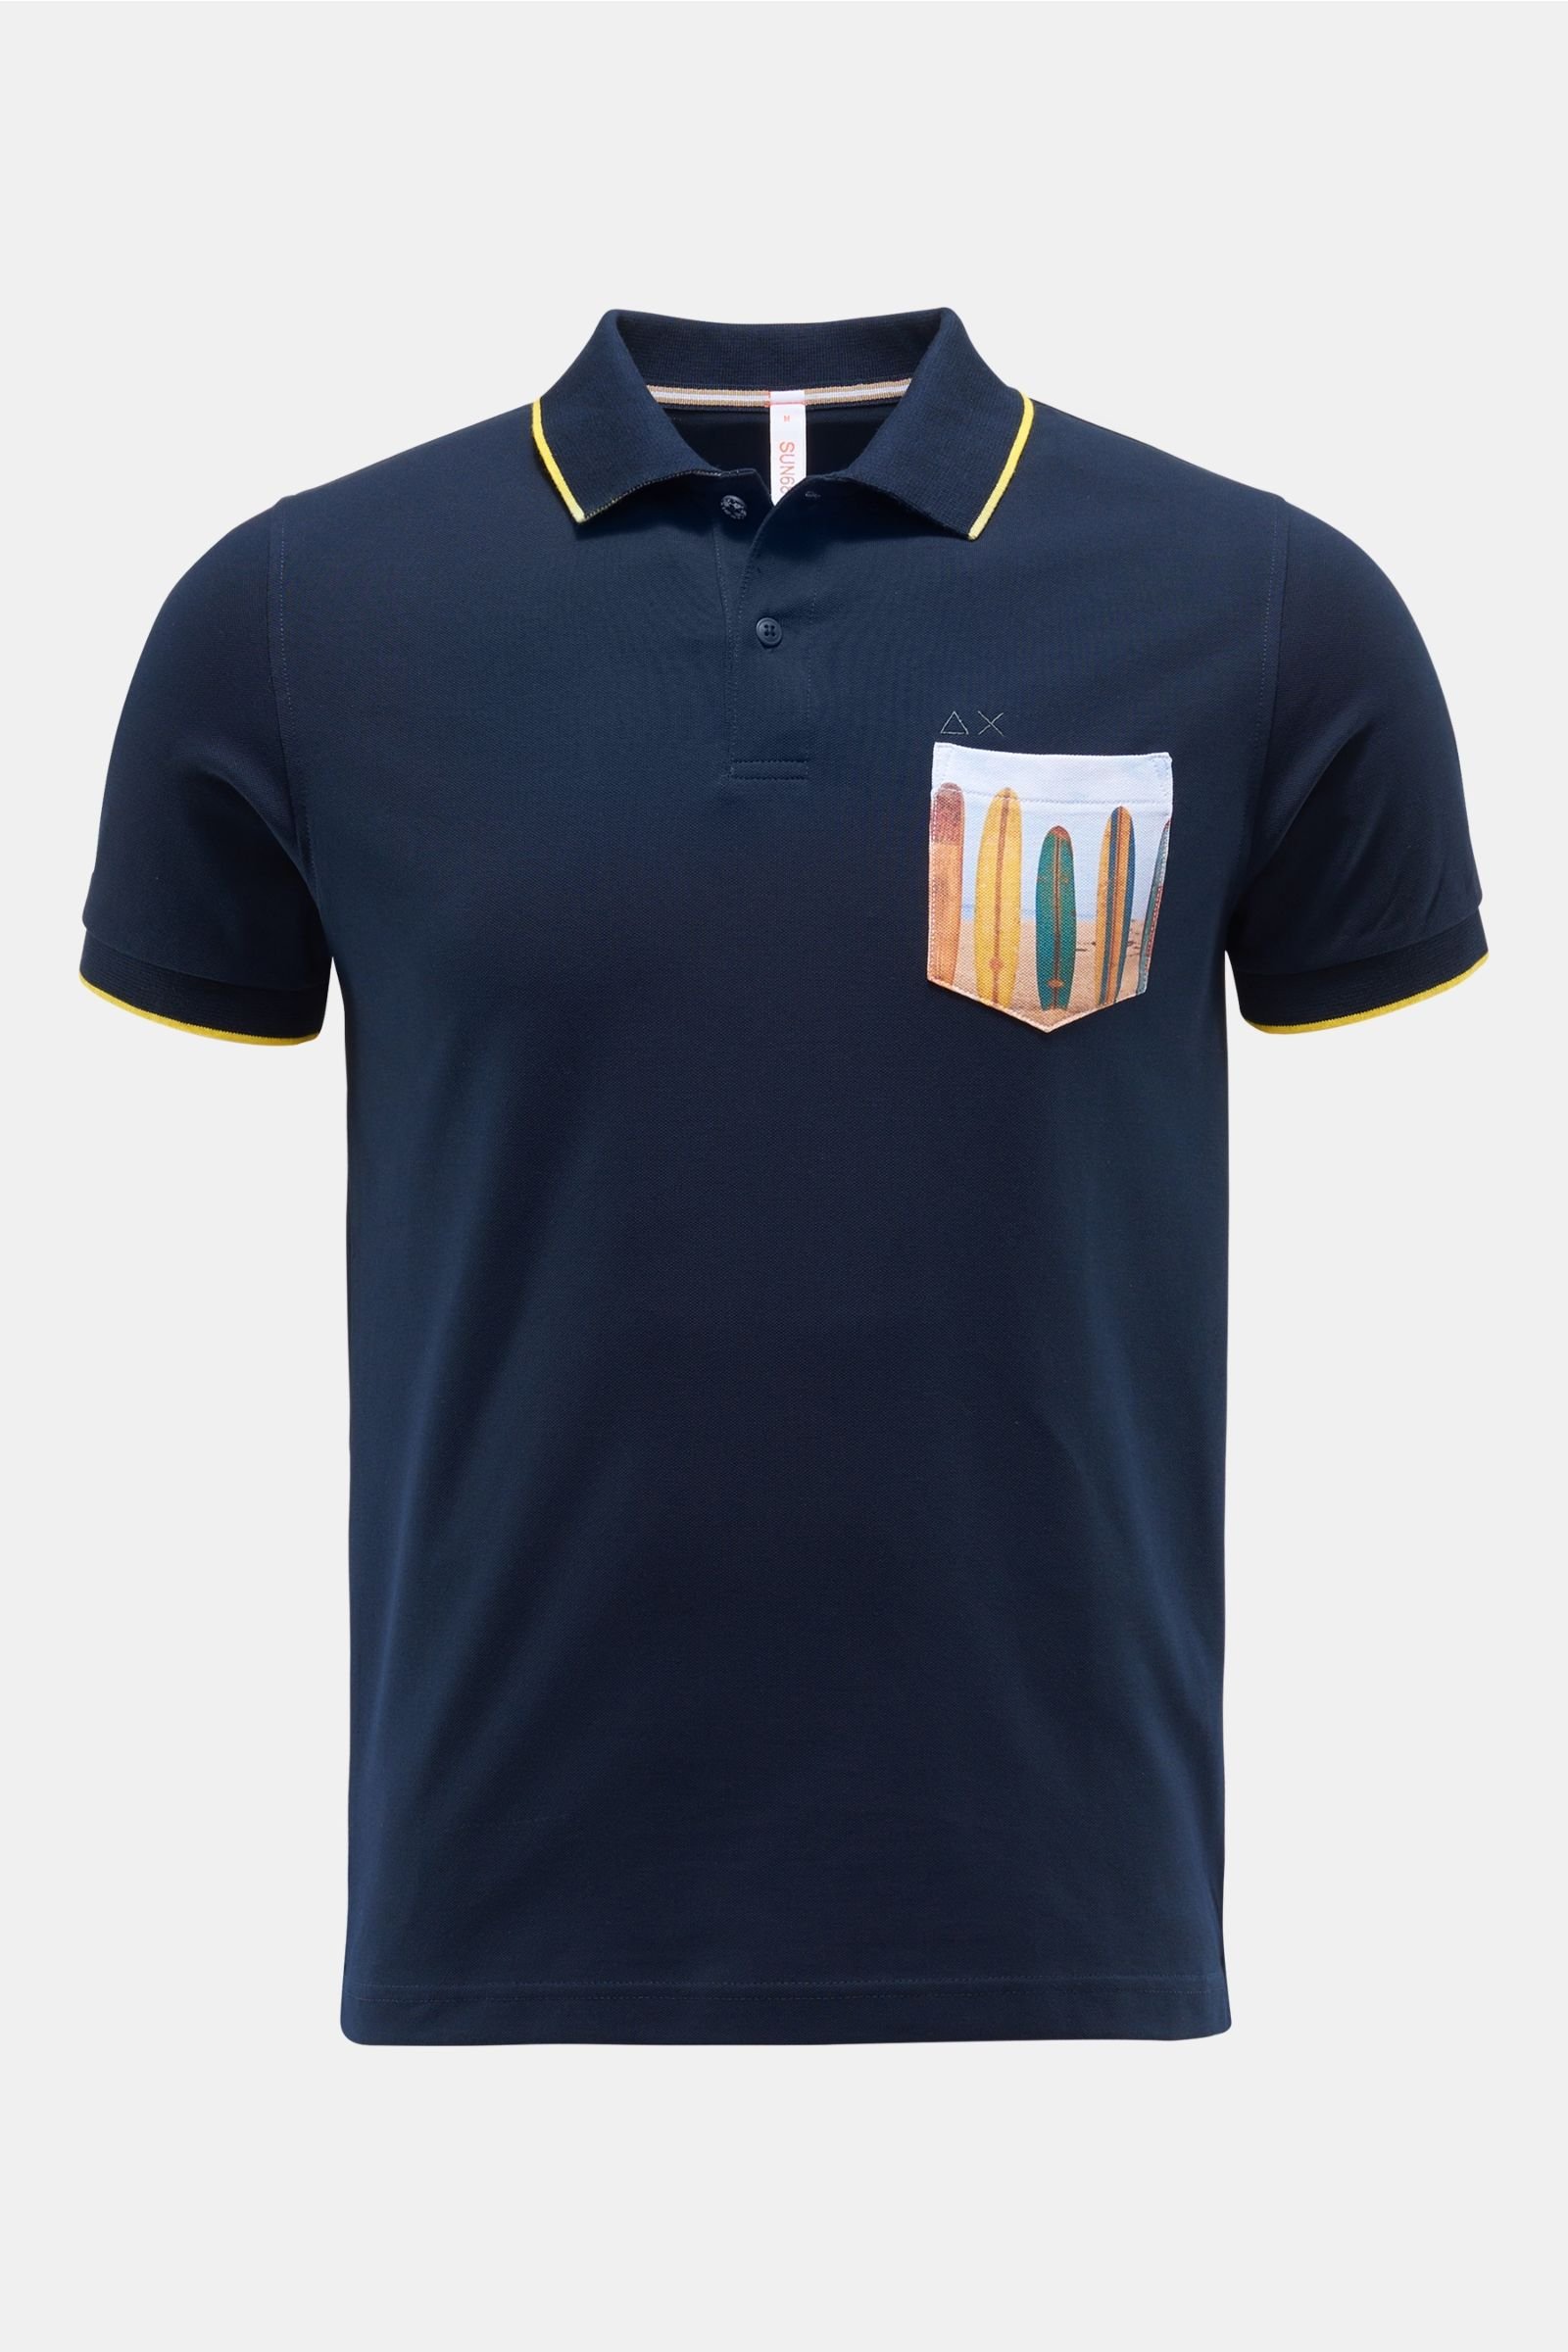 Polo shirt navy